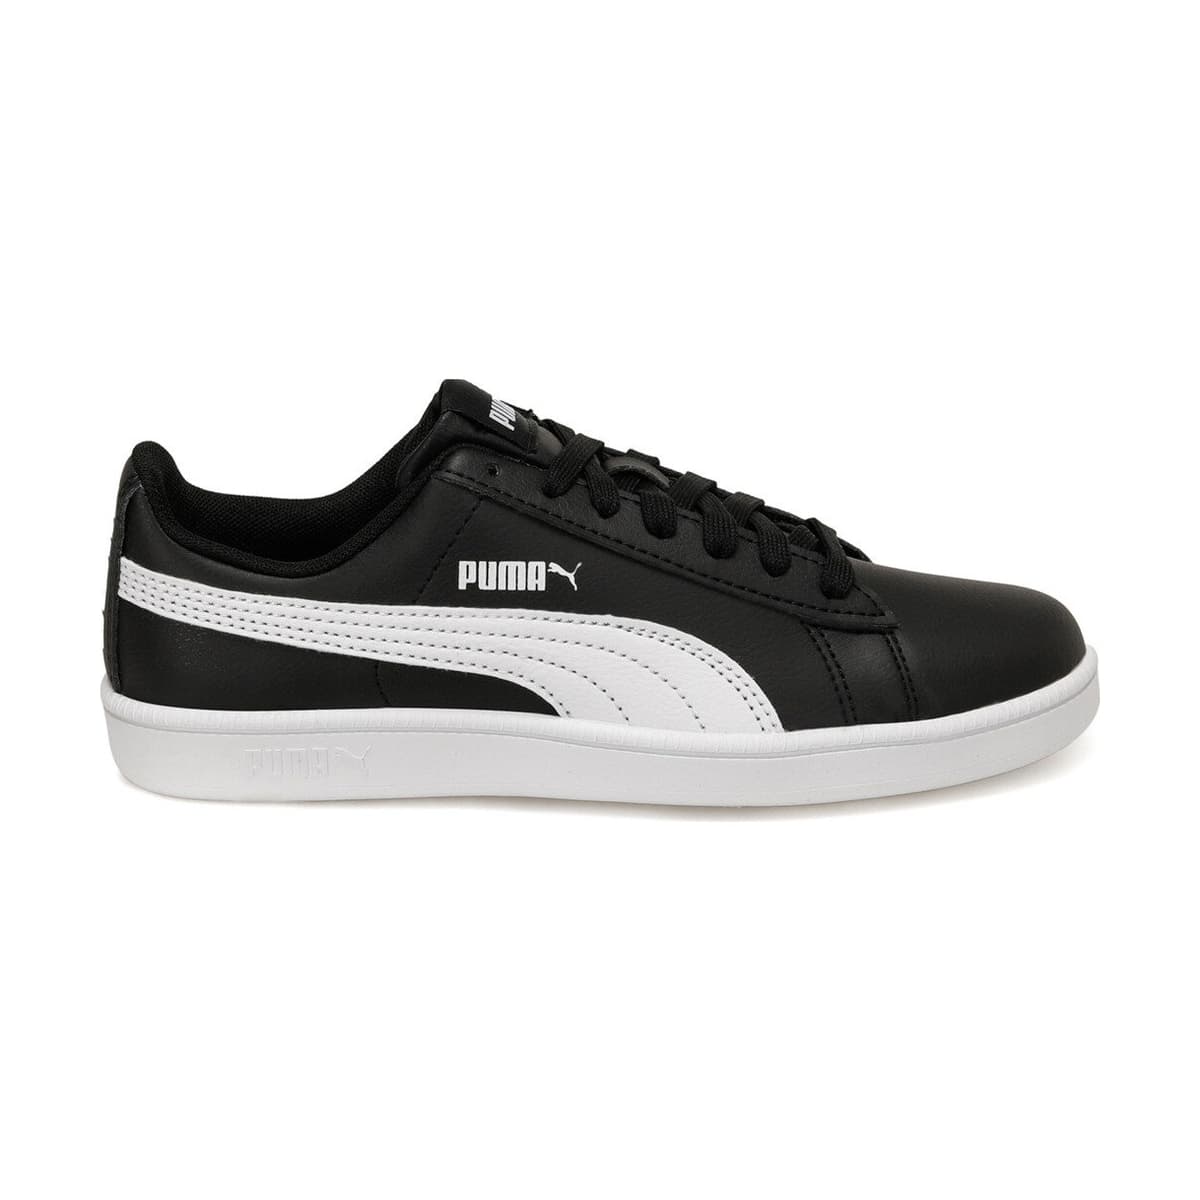 Puma Up Baseline Siyah Spor Ayakkabı (372605-01)